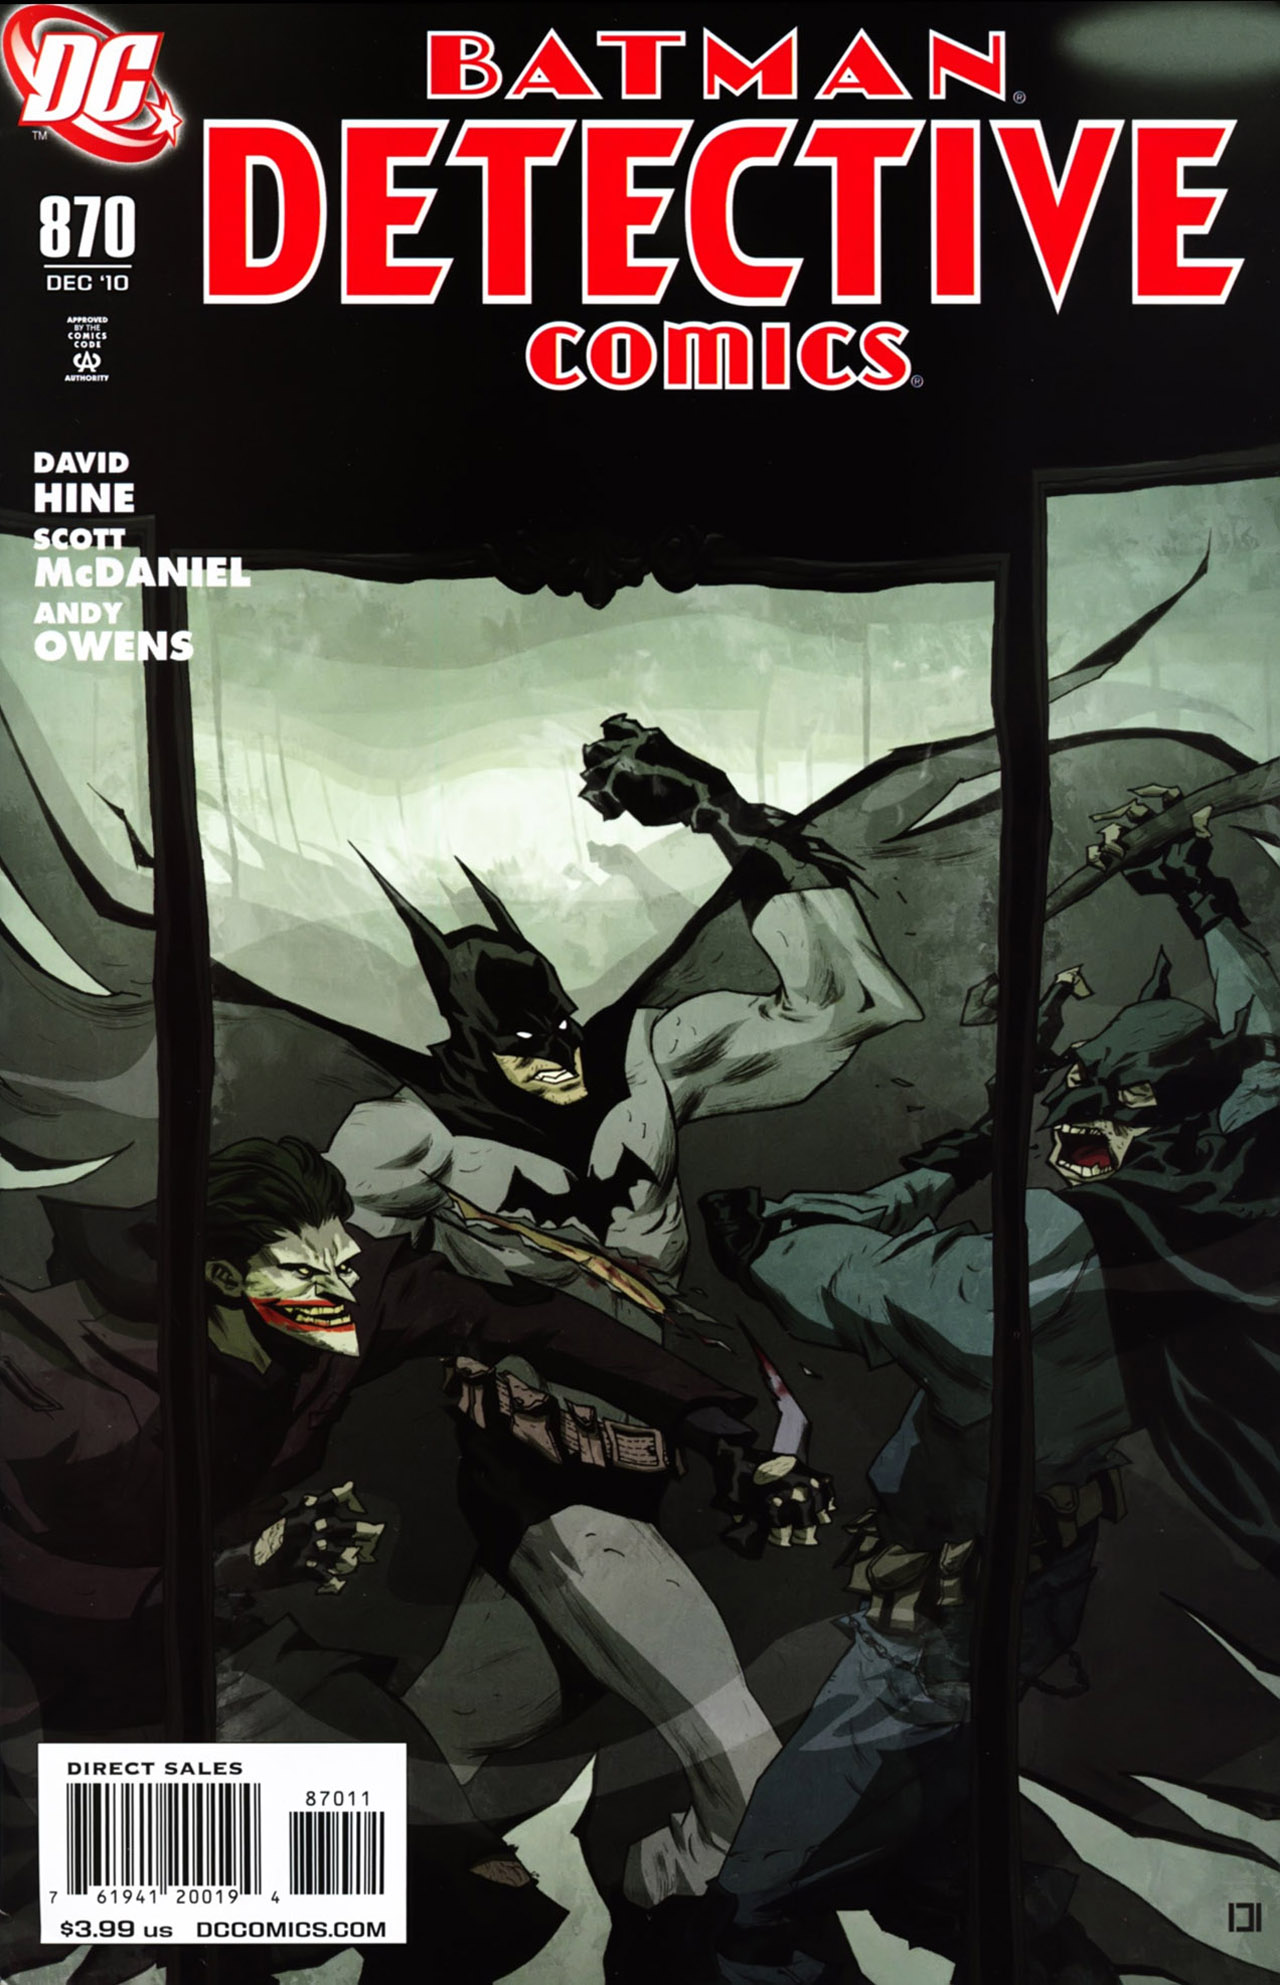 Detective Comics Vol. 1 #870